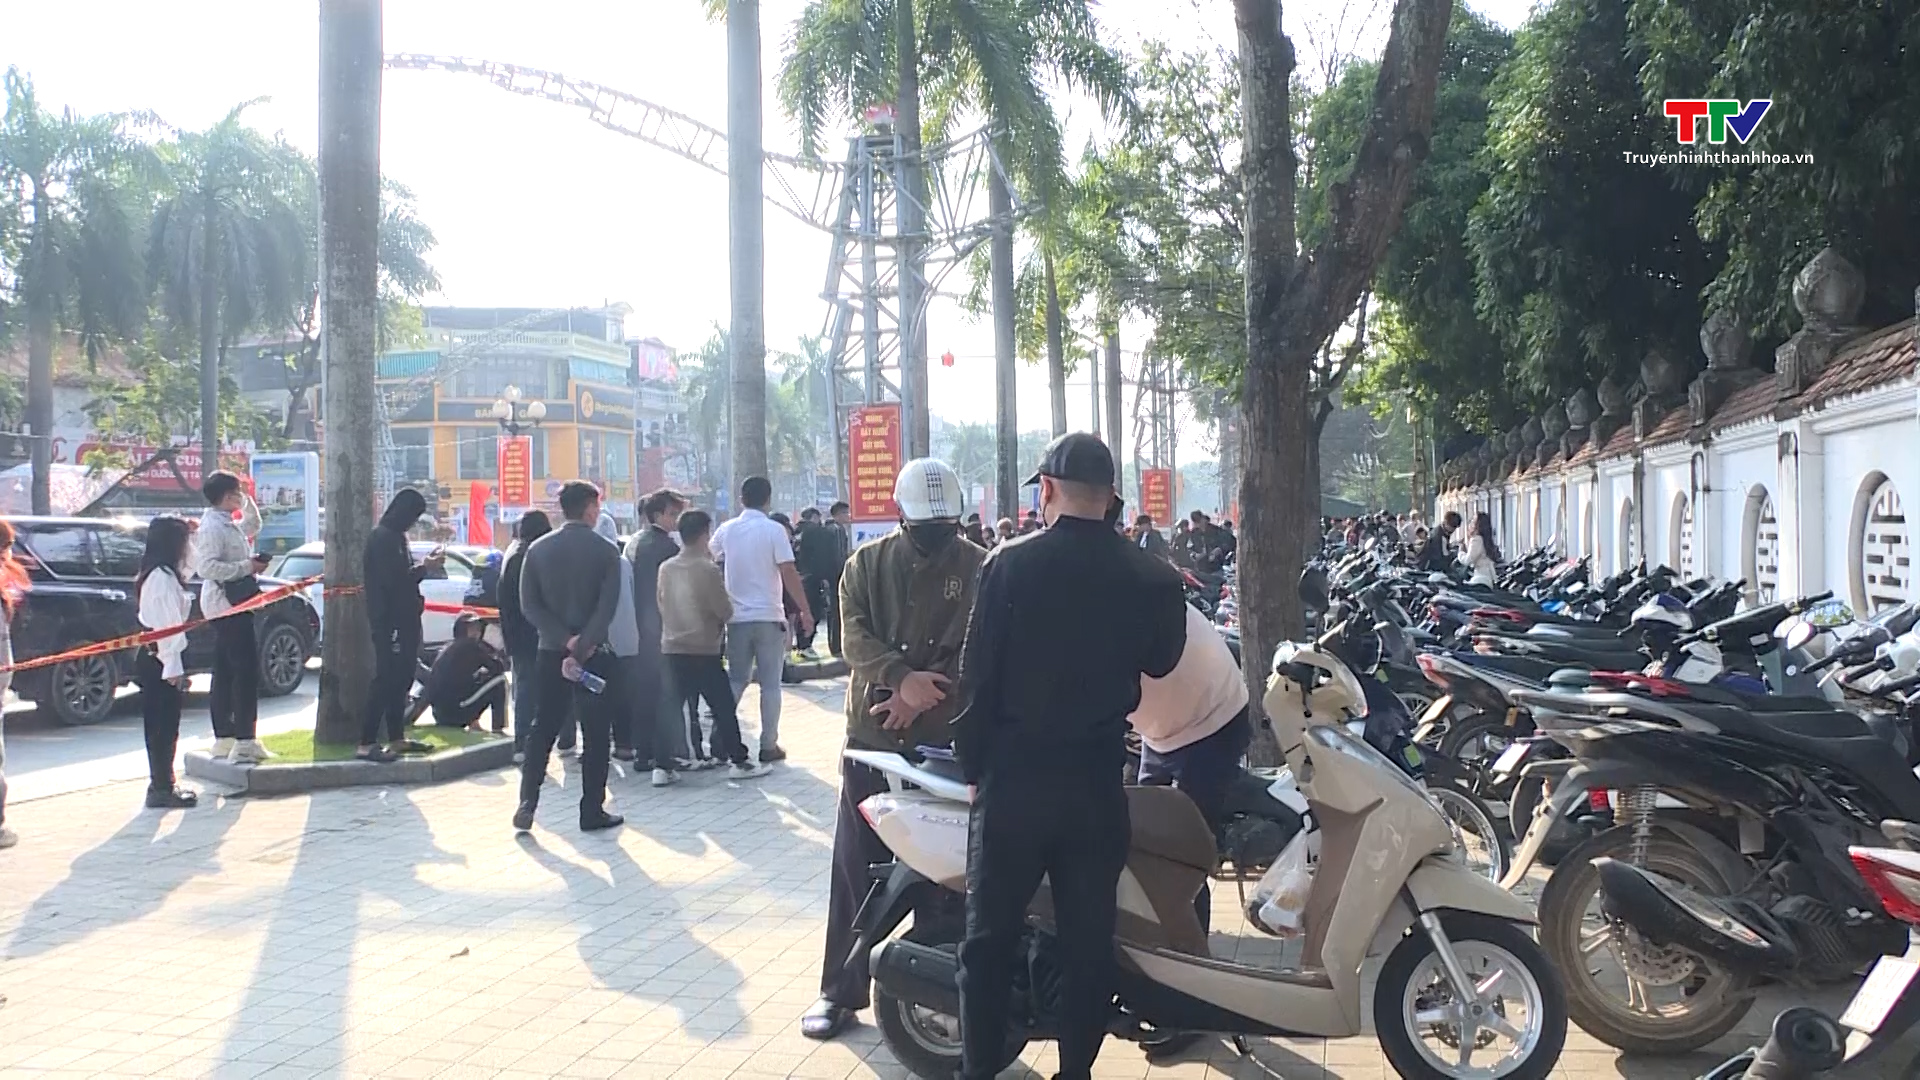 Công an thành phố Thanh Hóa siết chặt xử lý thanh thiếu niên vi phạm trật tự giao thông - Ảnh 3.